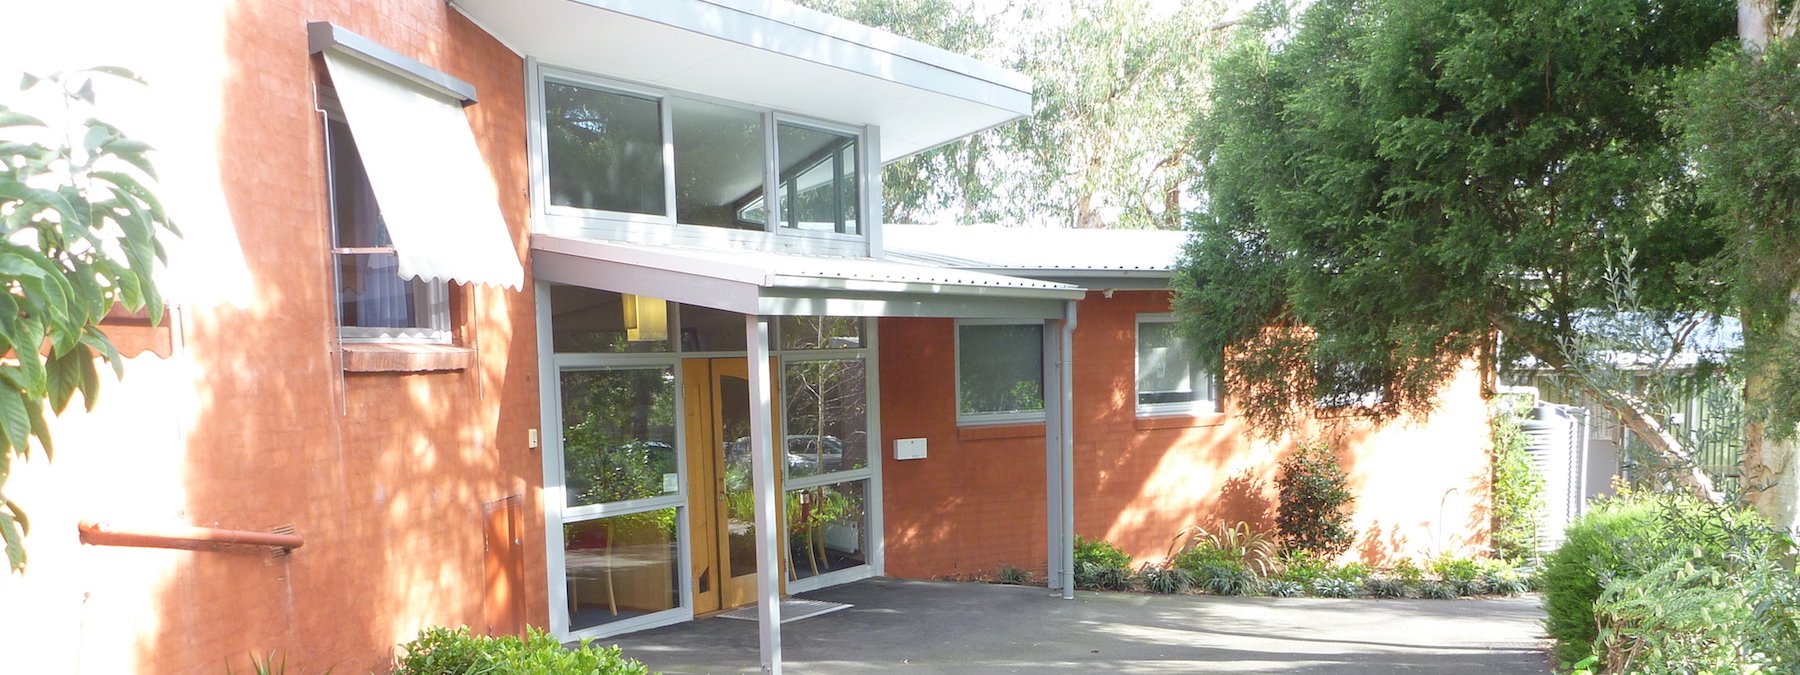 Melbourne Therapy Centre